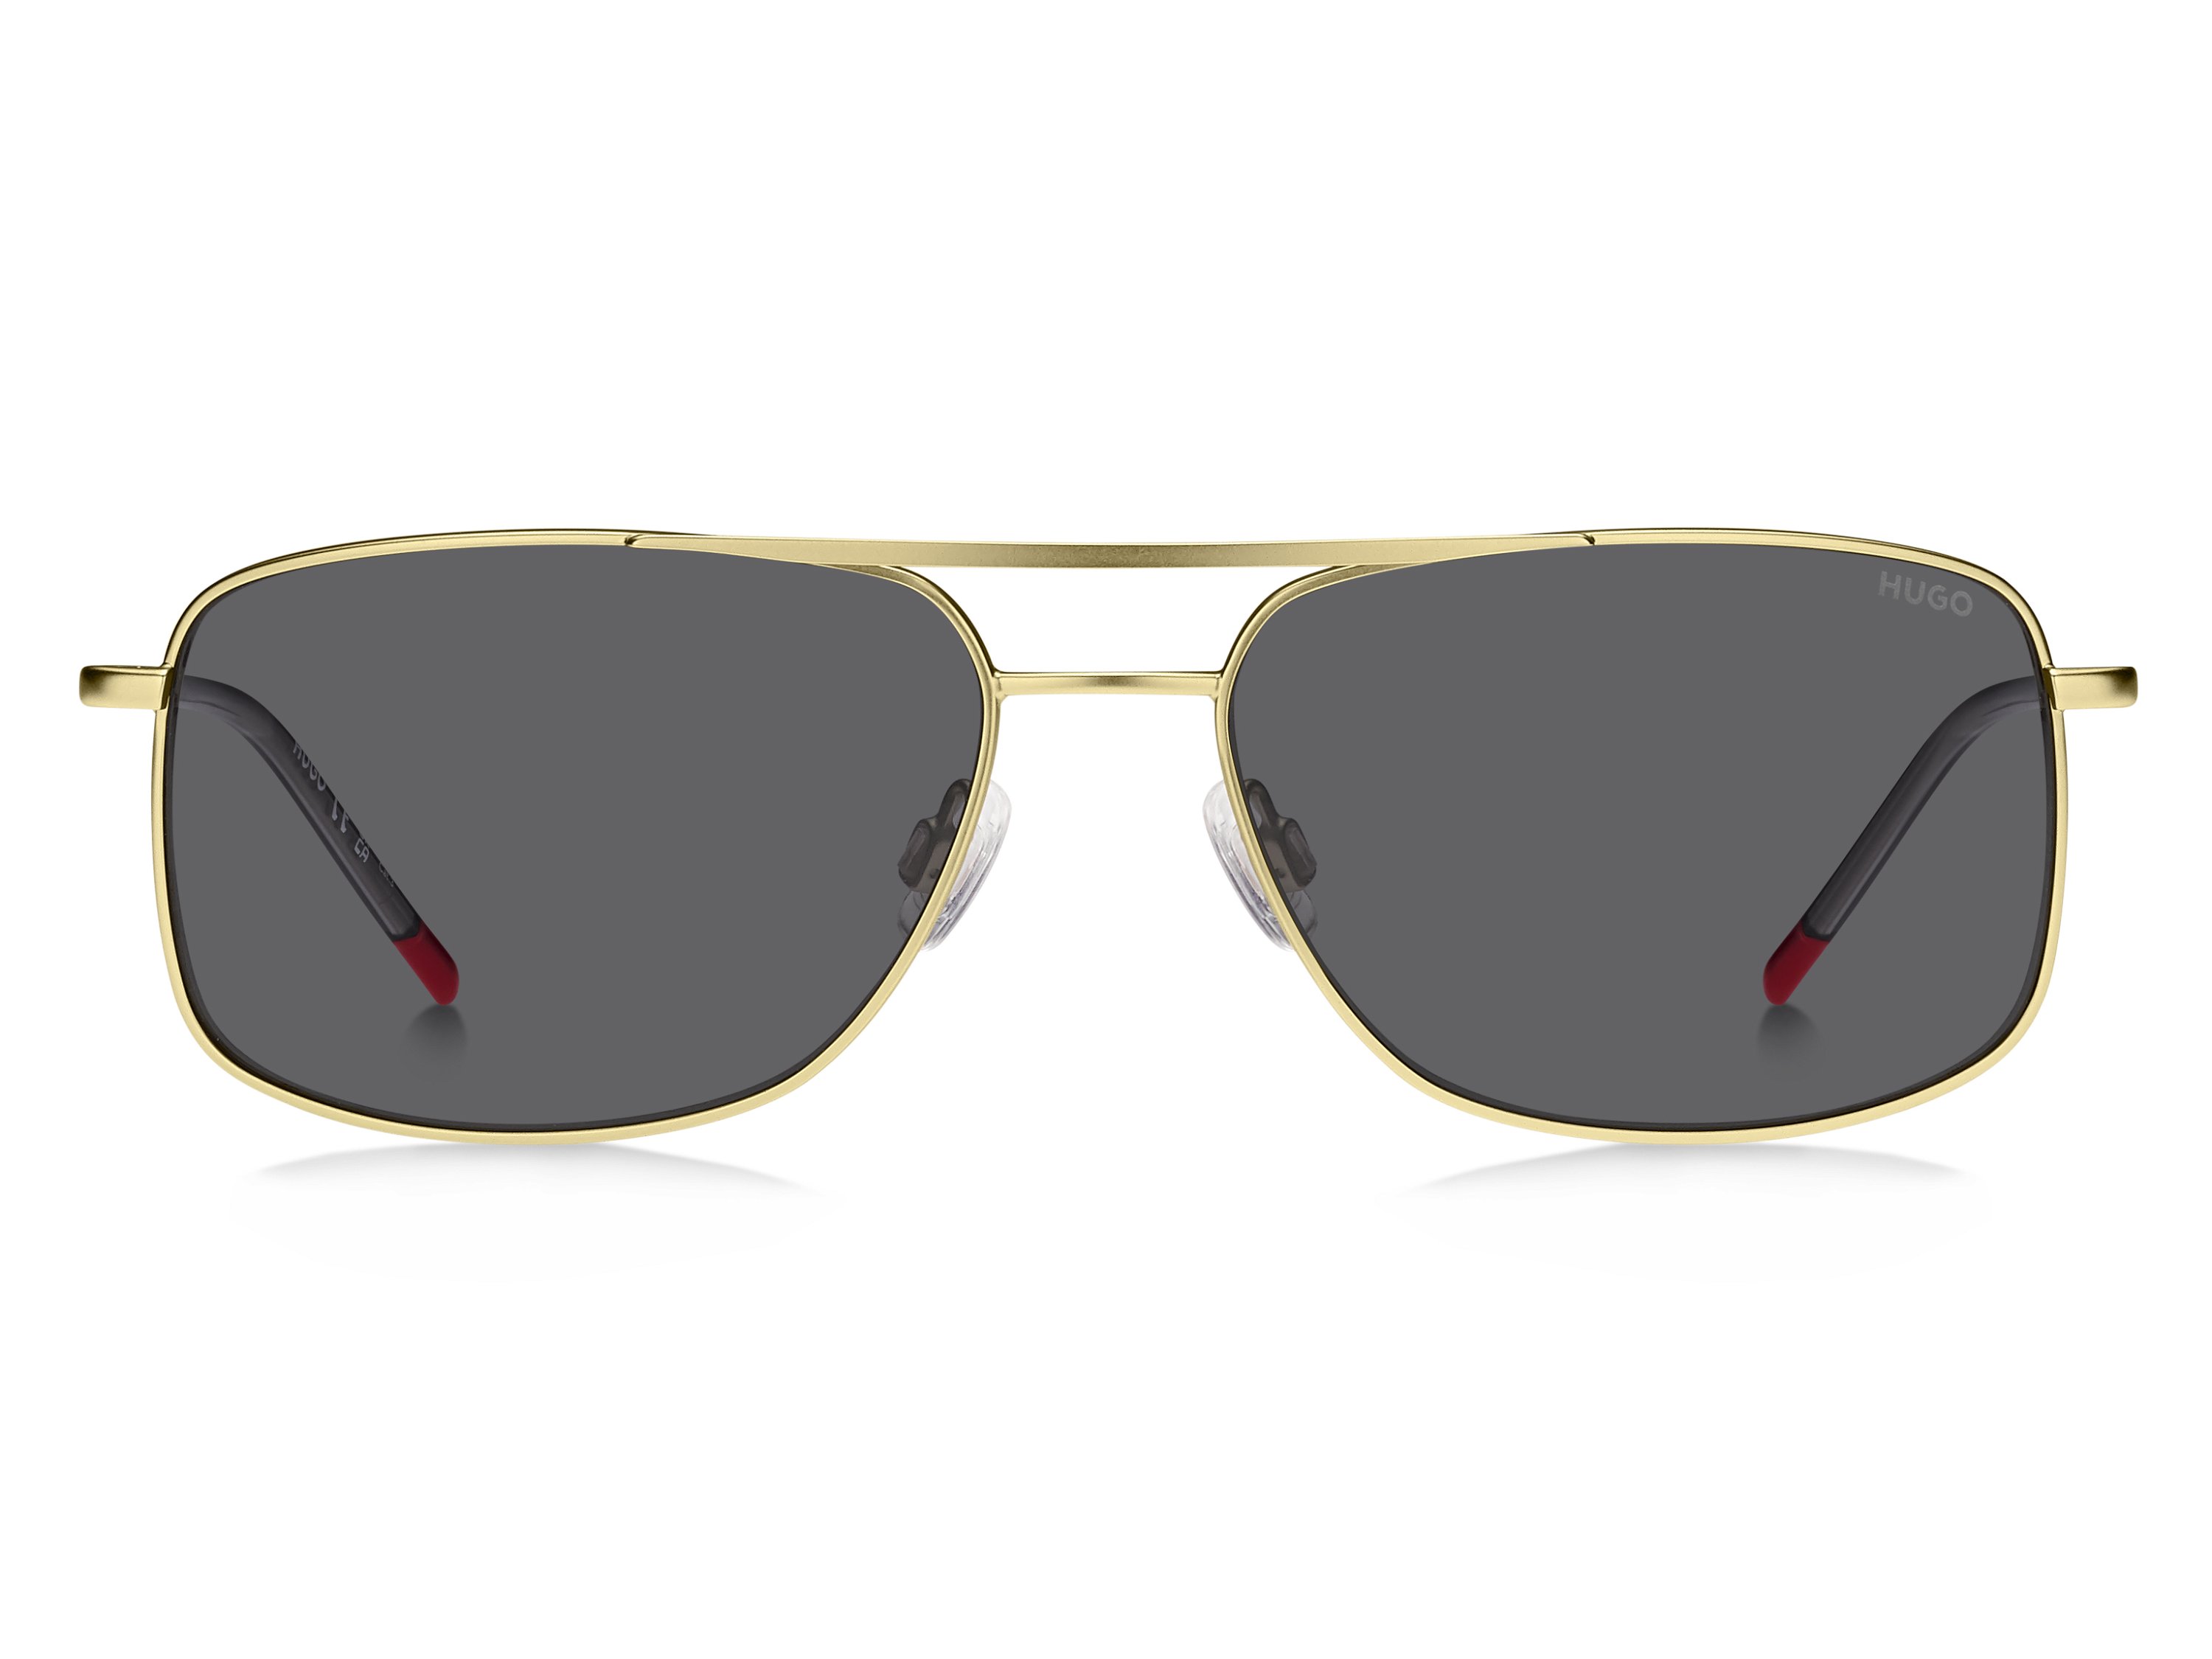 Das Bild zeigt die Sonnenbrille HG1287/S 2F7 von der Marke Hugo in gold/grau.